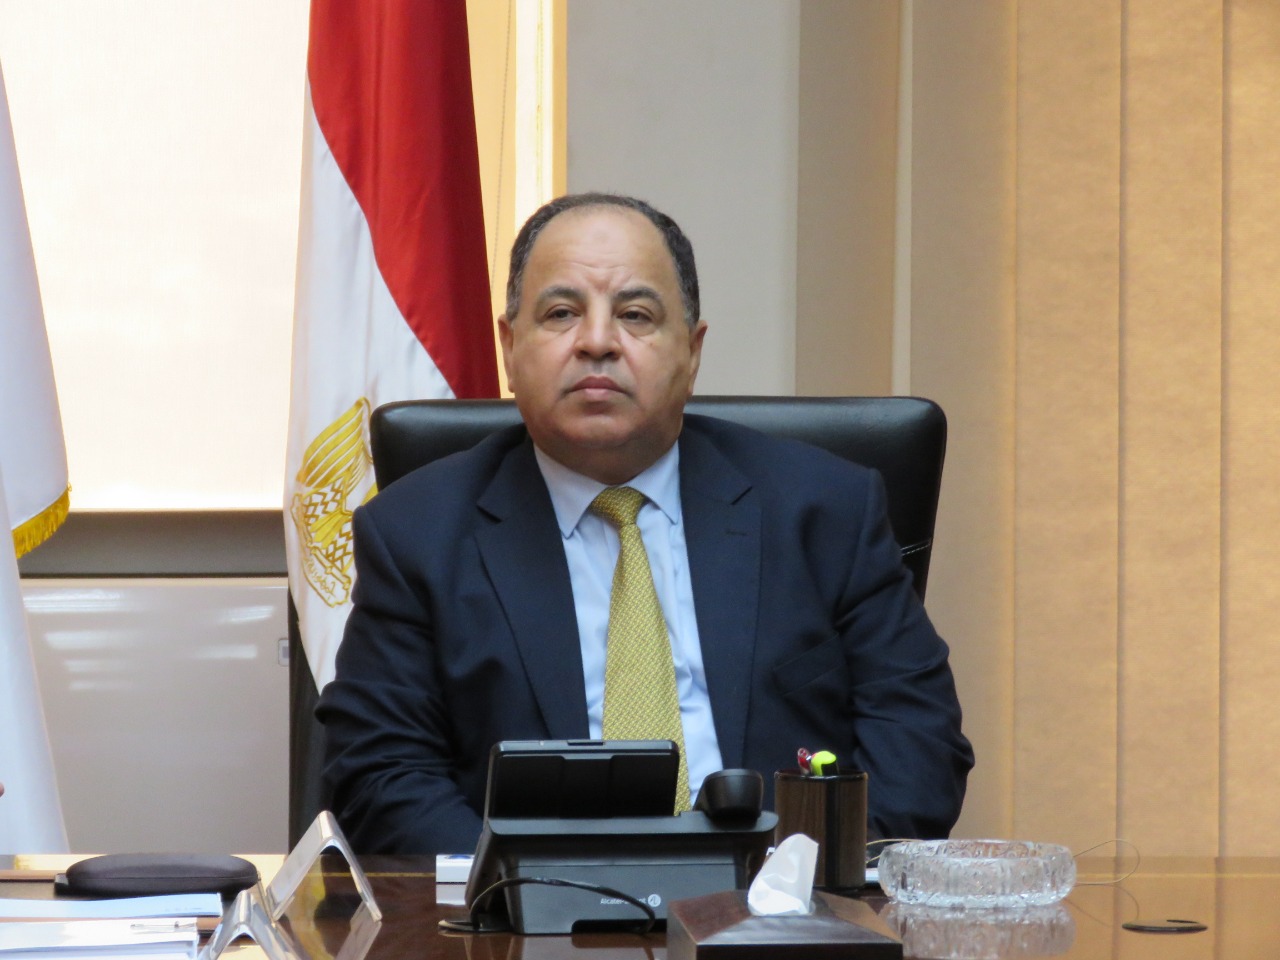 الرئيس السيسي يكلف الحكومة بوضع كافة الإمكانات المصرية تحت أمر السودان